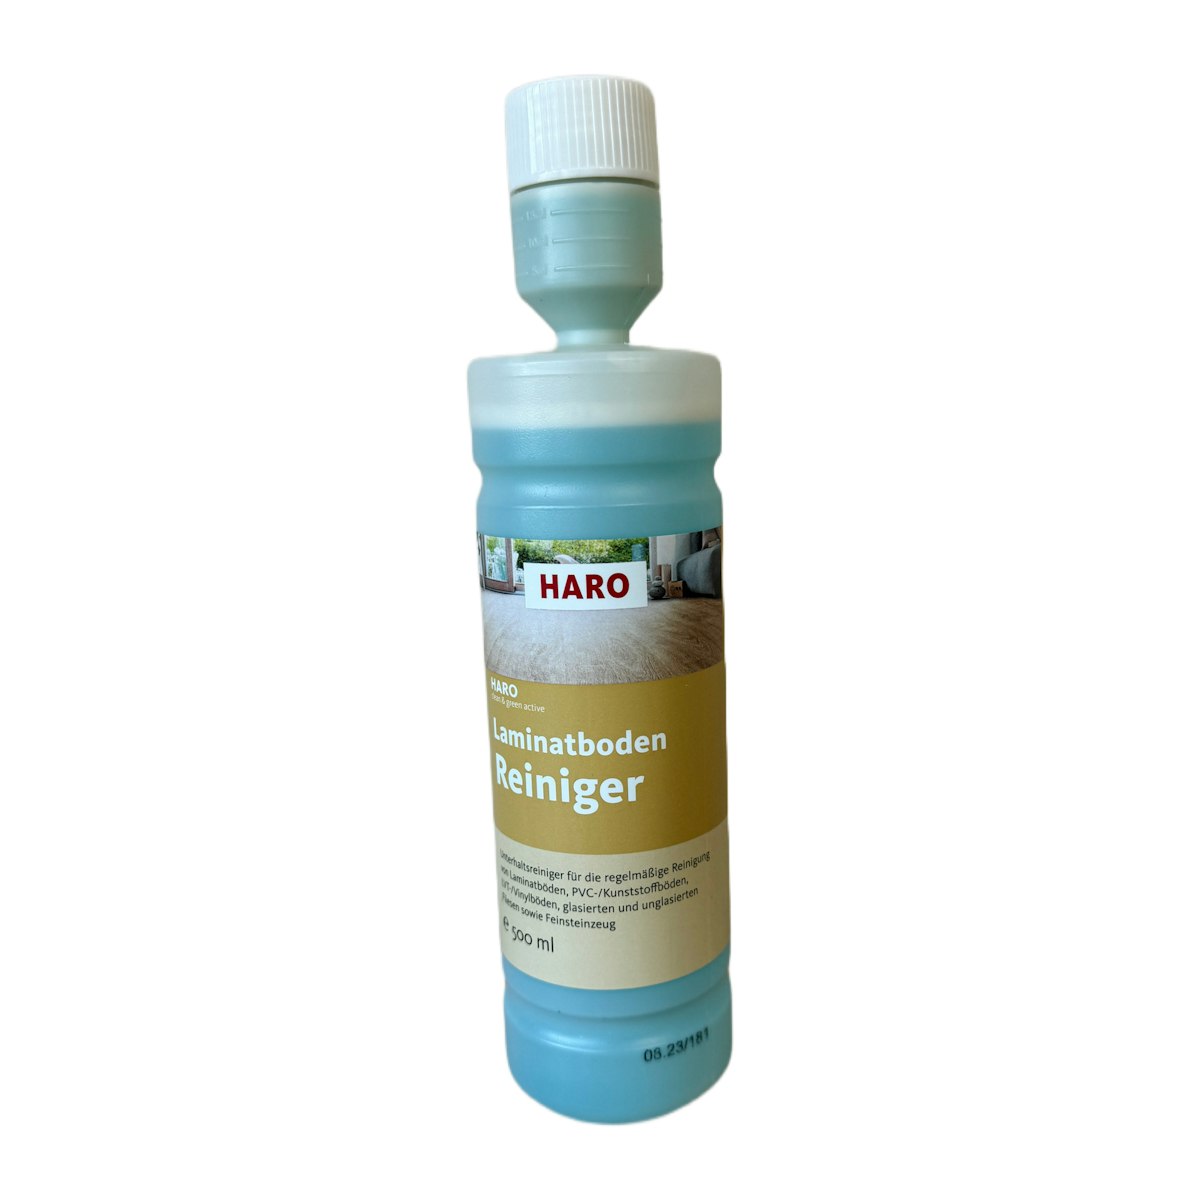 HARO Laminatboden Reiniger clean & green active Unterhaltsreiniger 500 ml DE von HARO